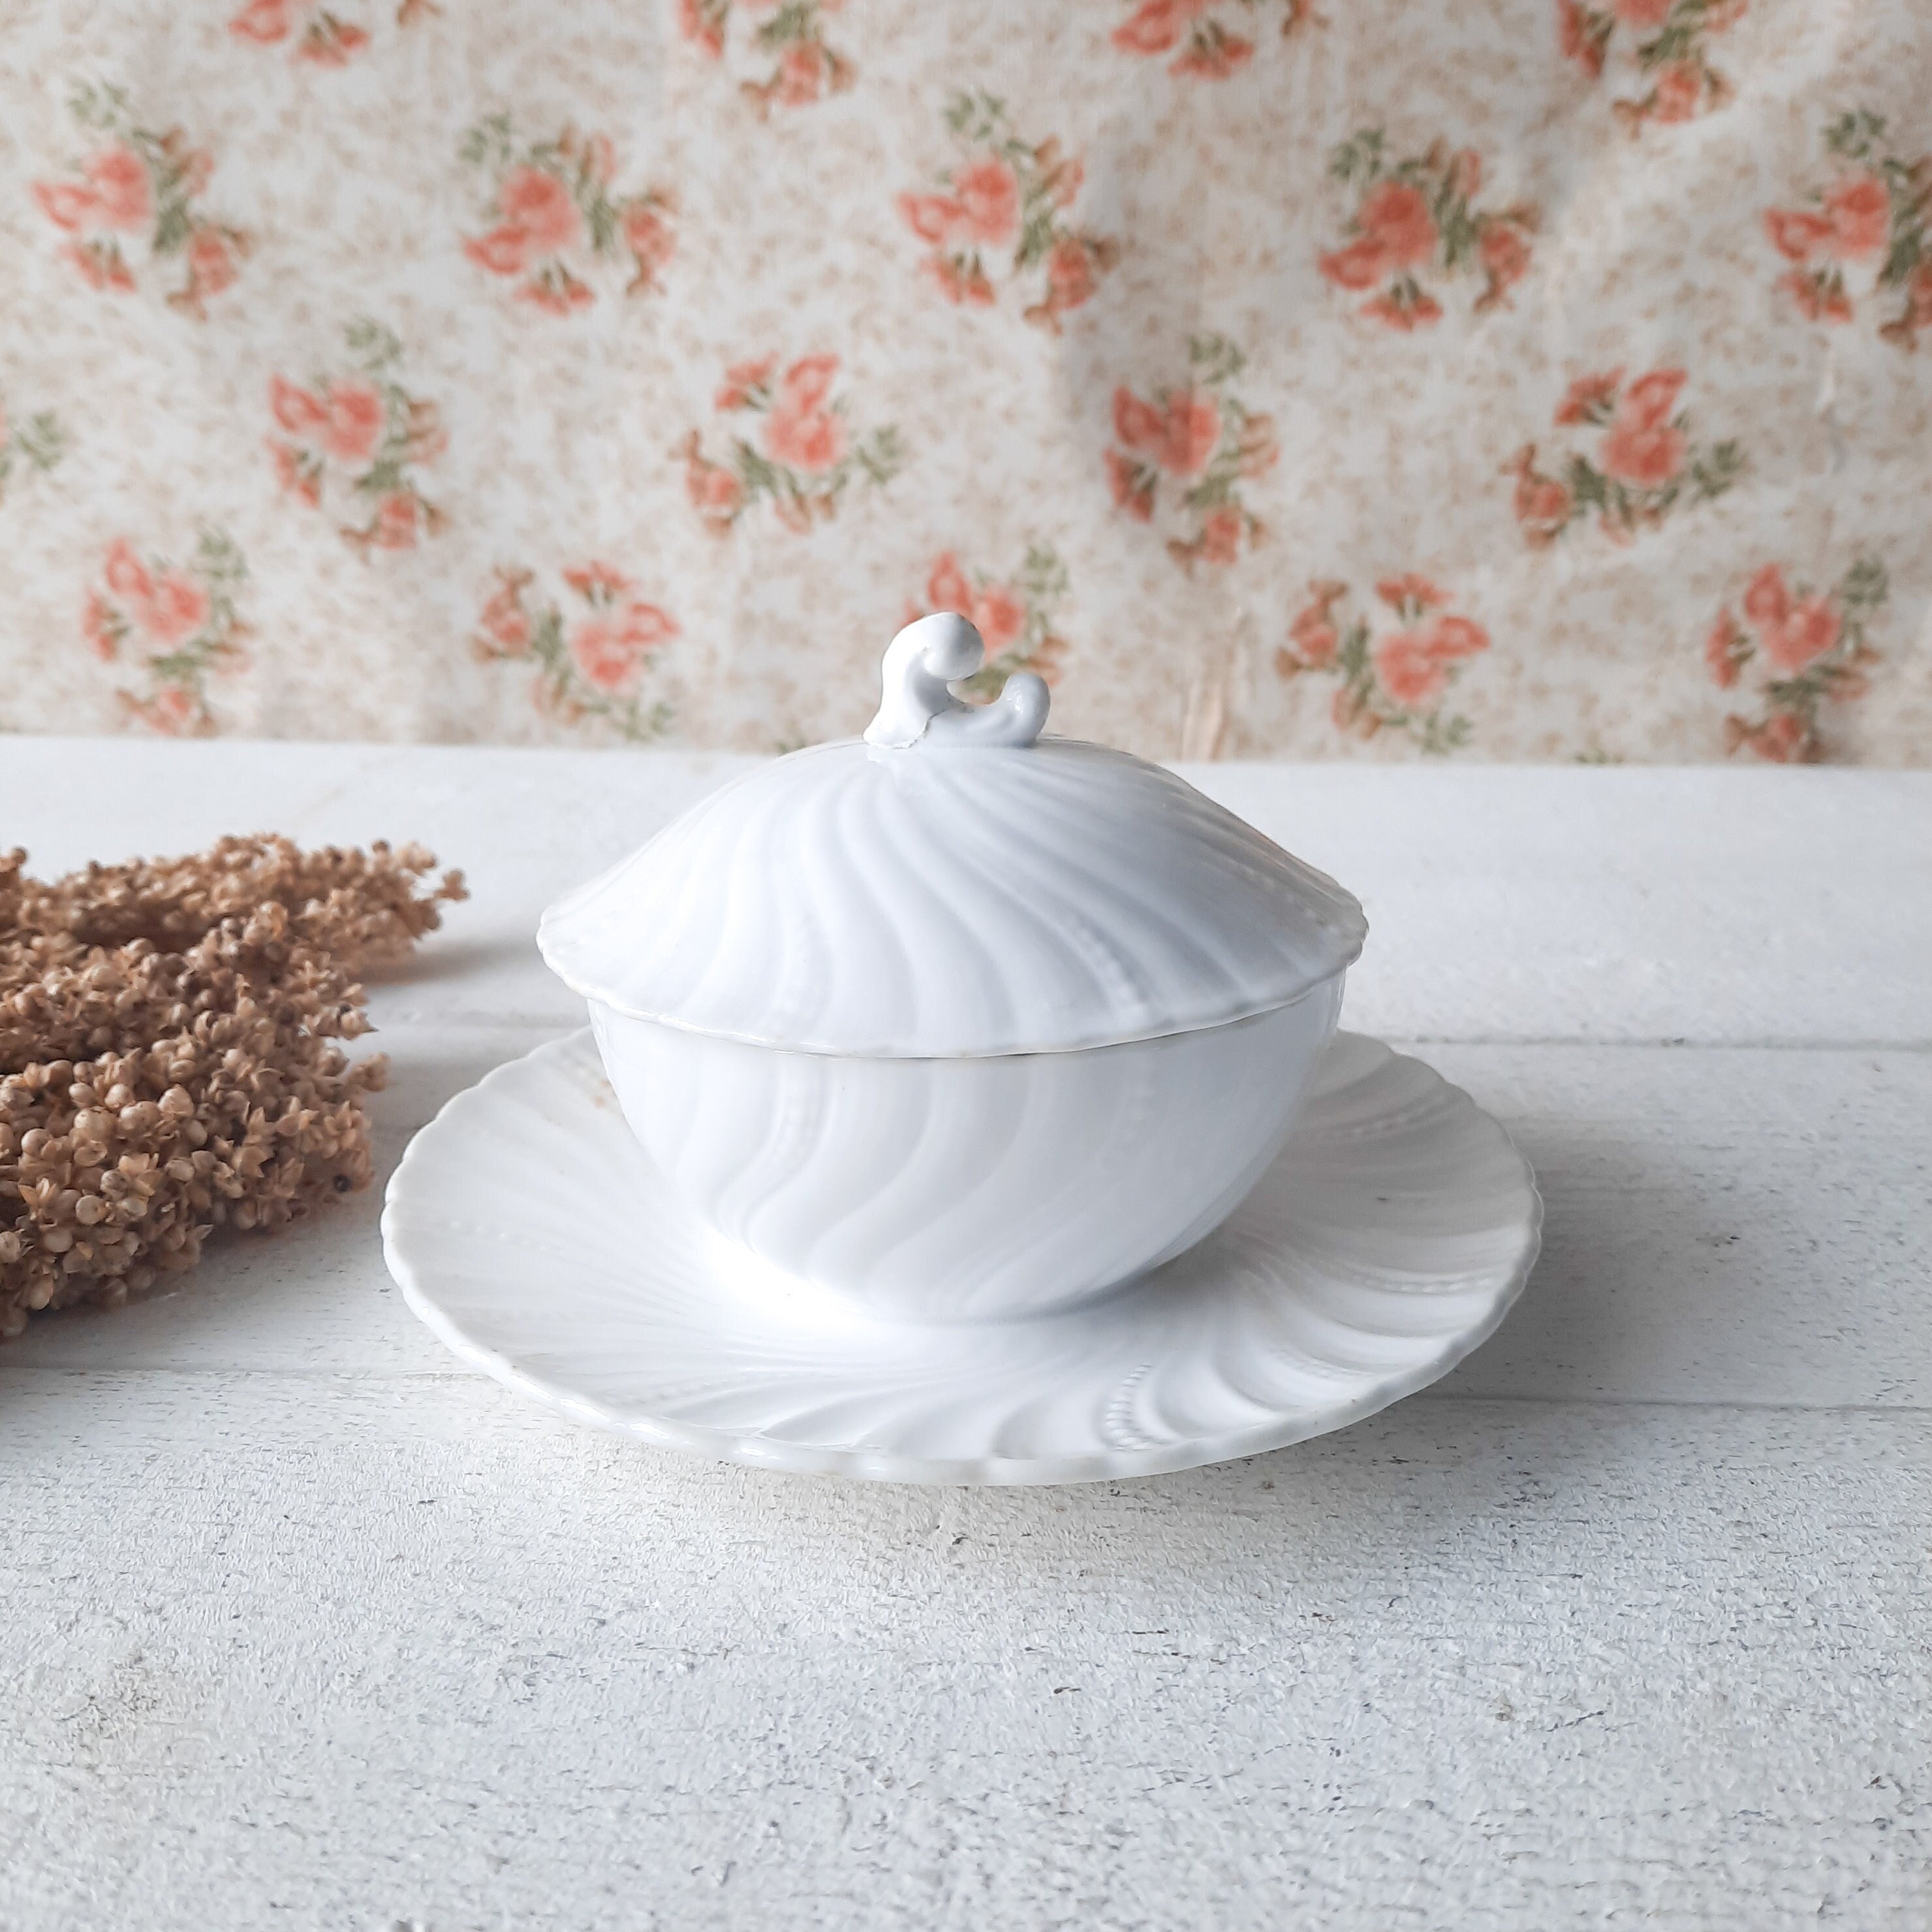 confiserie louis xi en porcelaine blanche de sarreguemines couverte, sucrier art nouveau avec couvercle